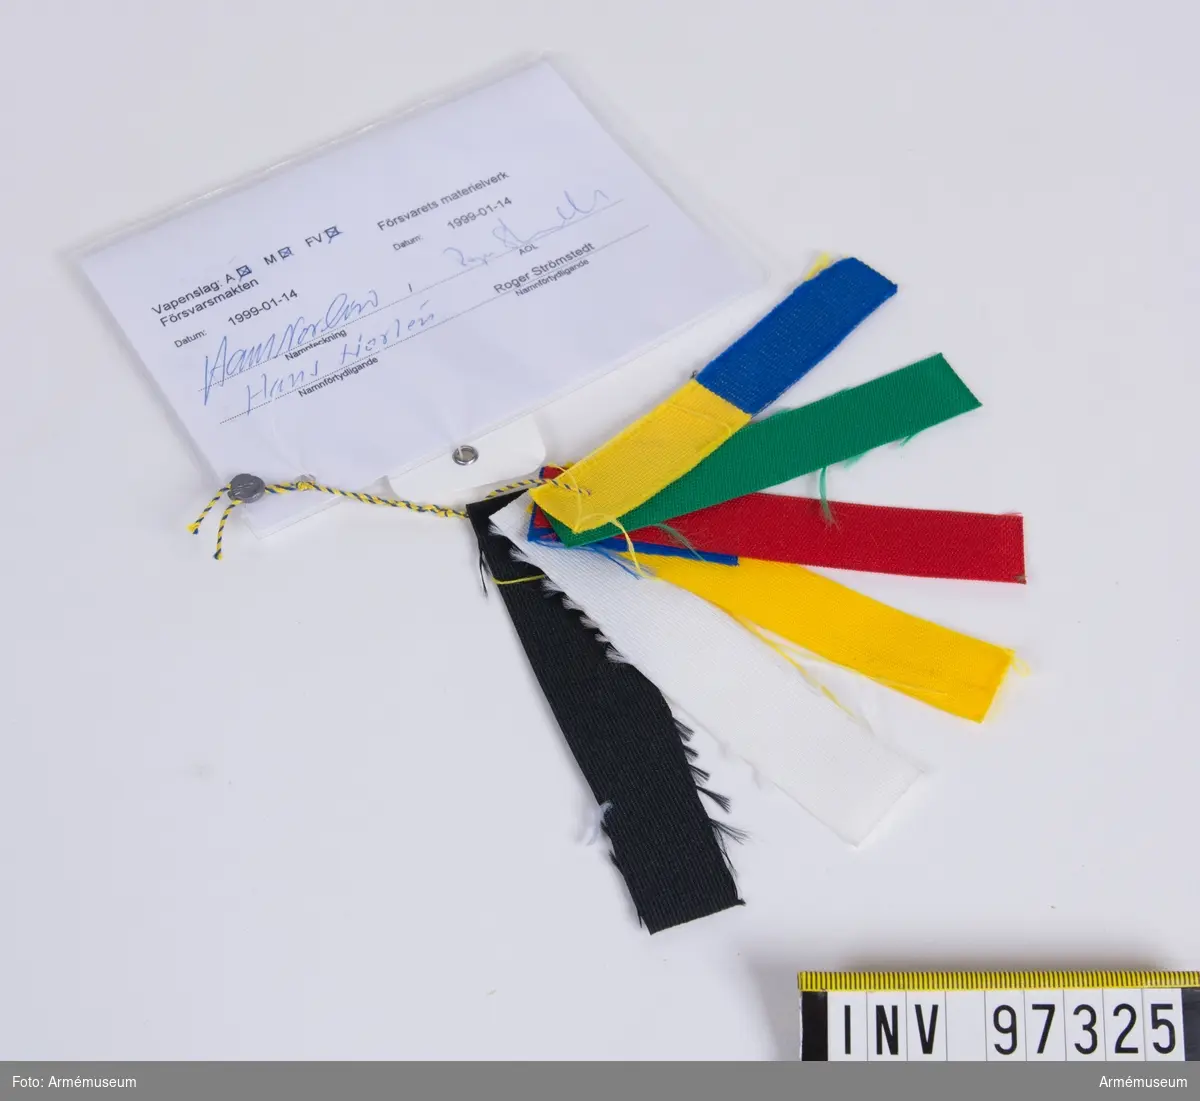 Knippe med prov på band i olika färger. Varje färg har eget M-nummer. På den vidhängande modellappen anges alla M-nummer samt att teknisk bestämmelse finns i avtalet. Lappen är underskriven 1999-01-14 av Hans Norlén och Roger Strömstedt.